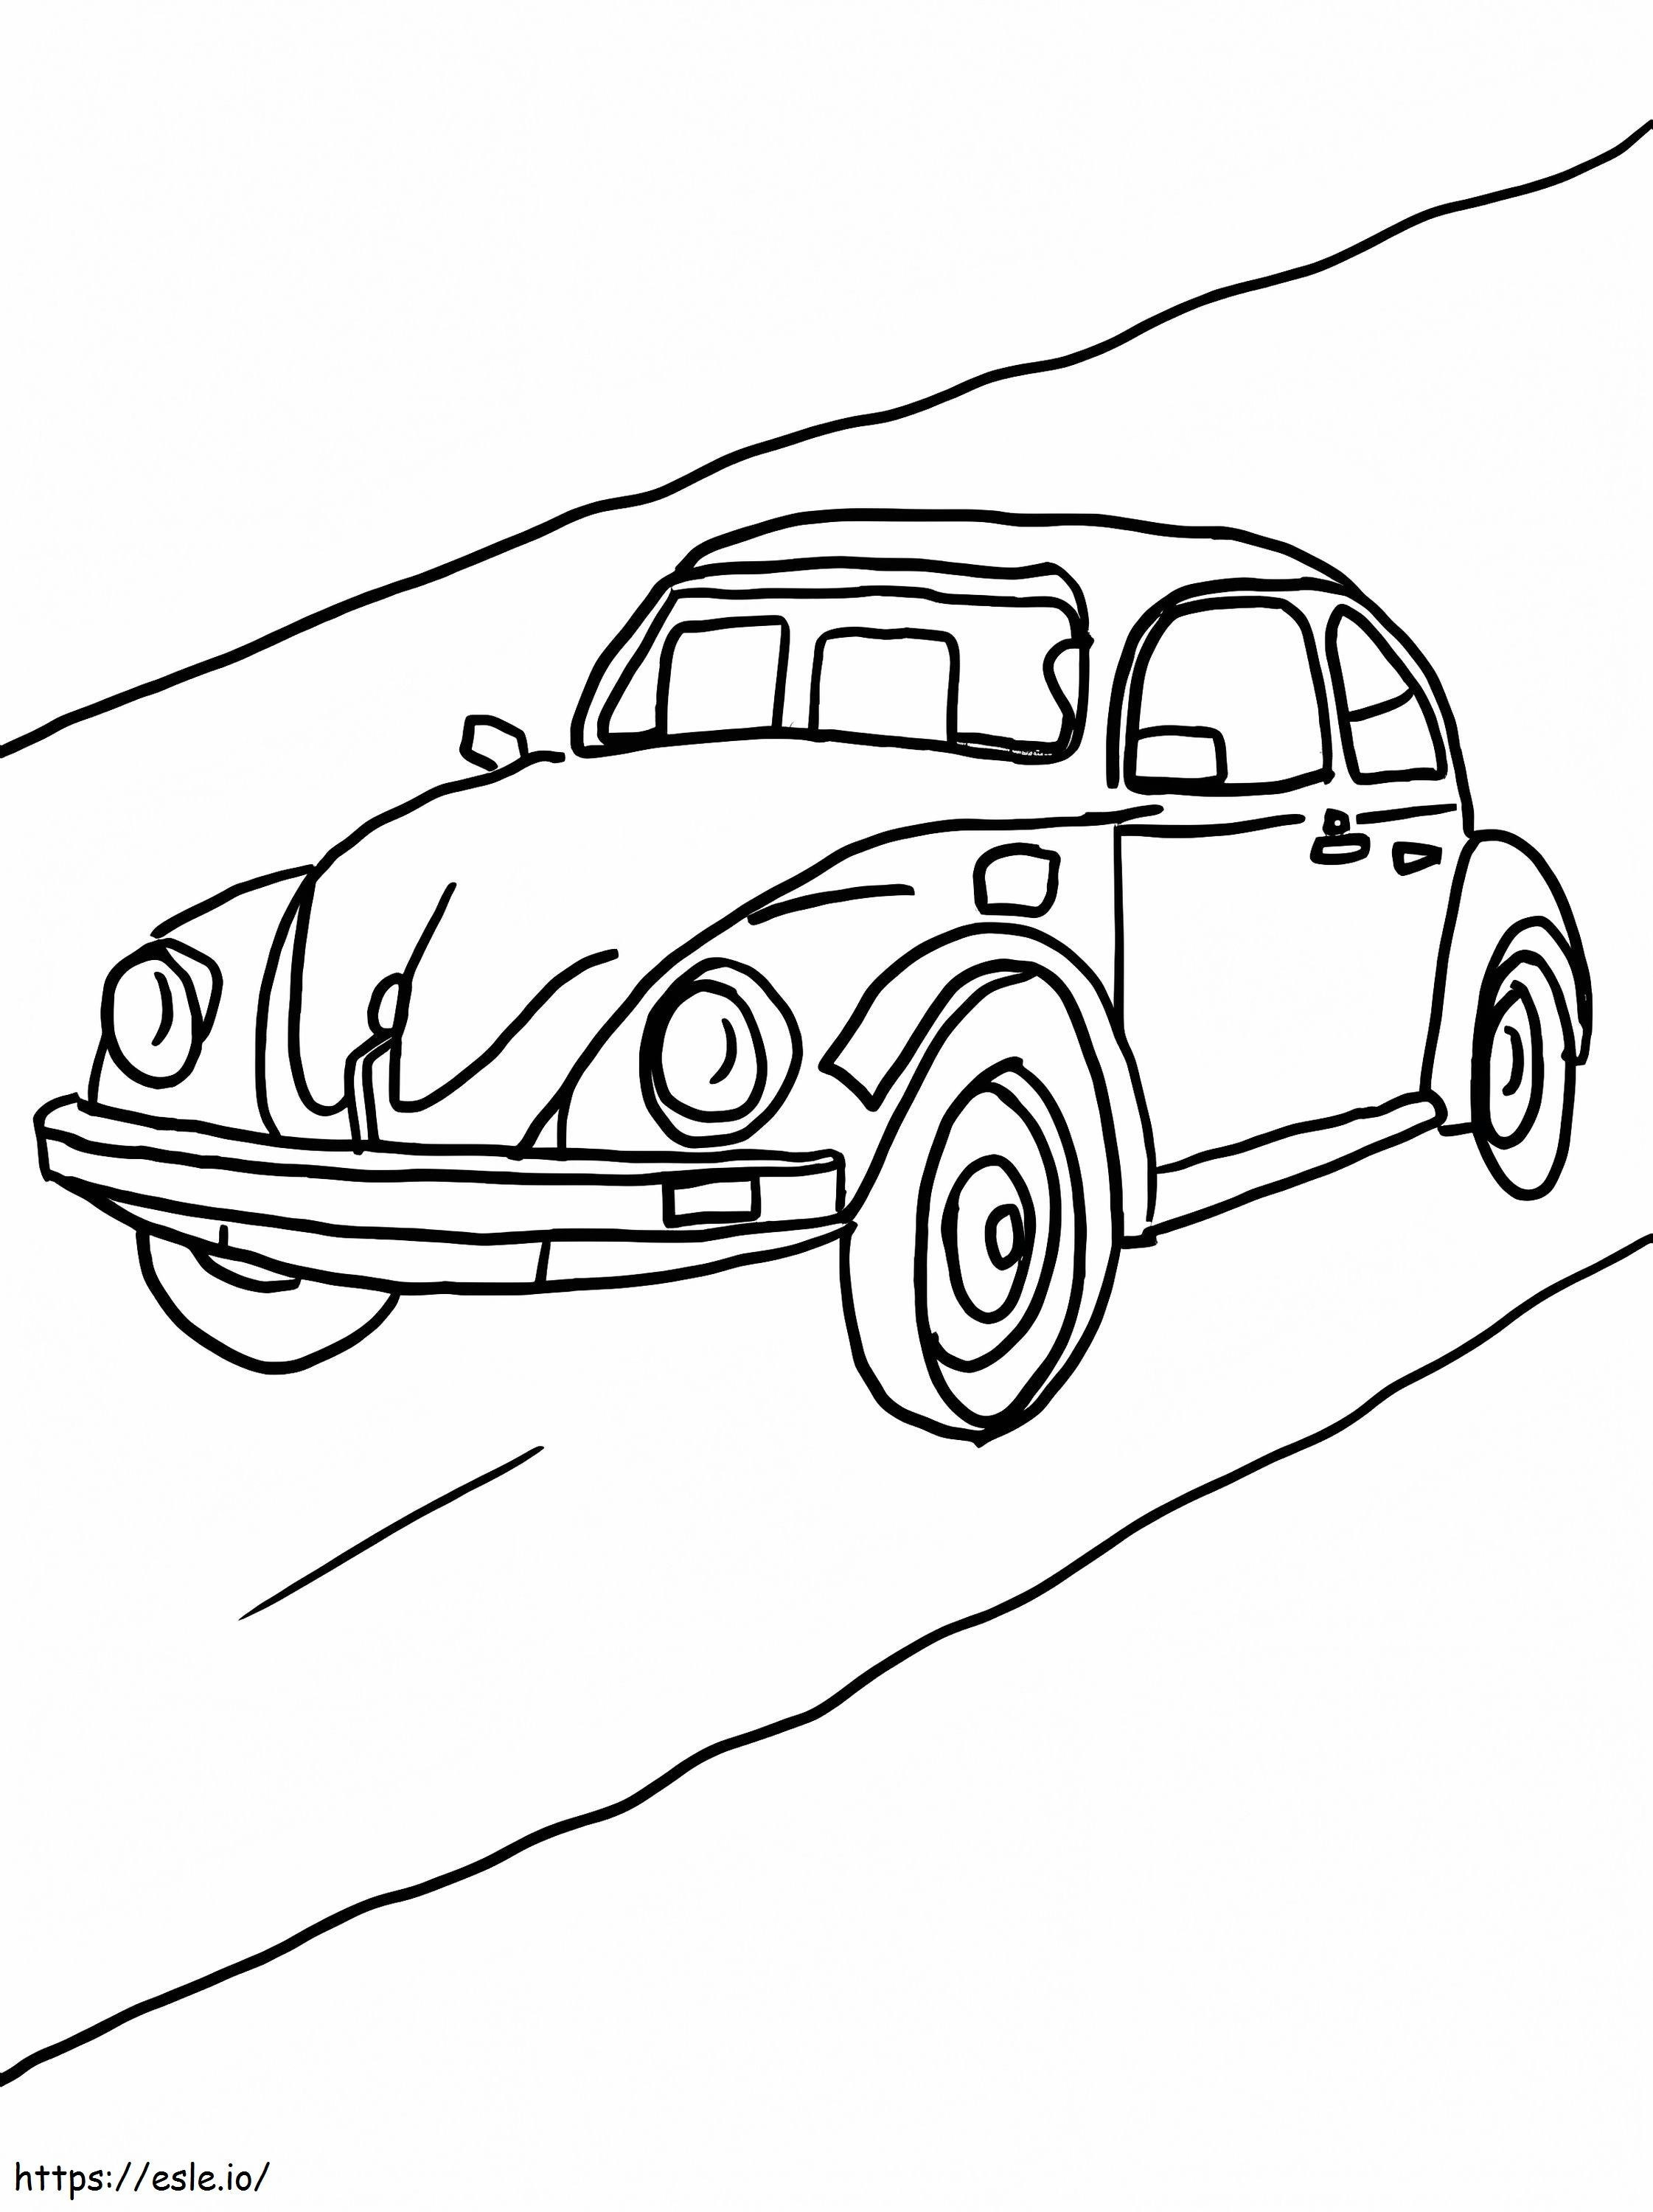 Carro básico na estrada para colorir